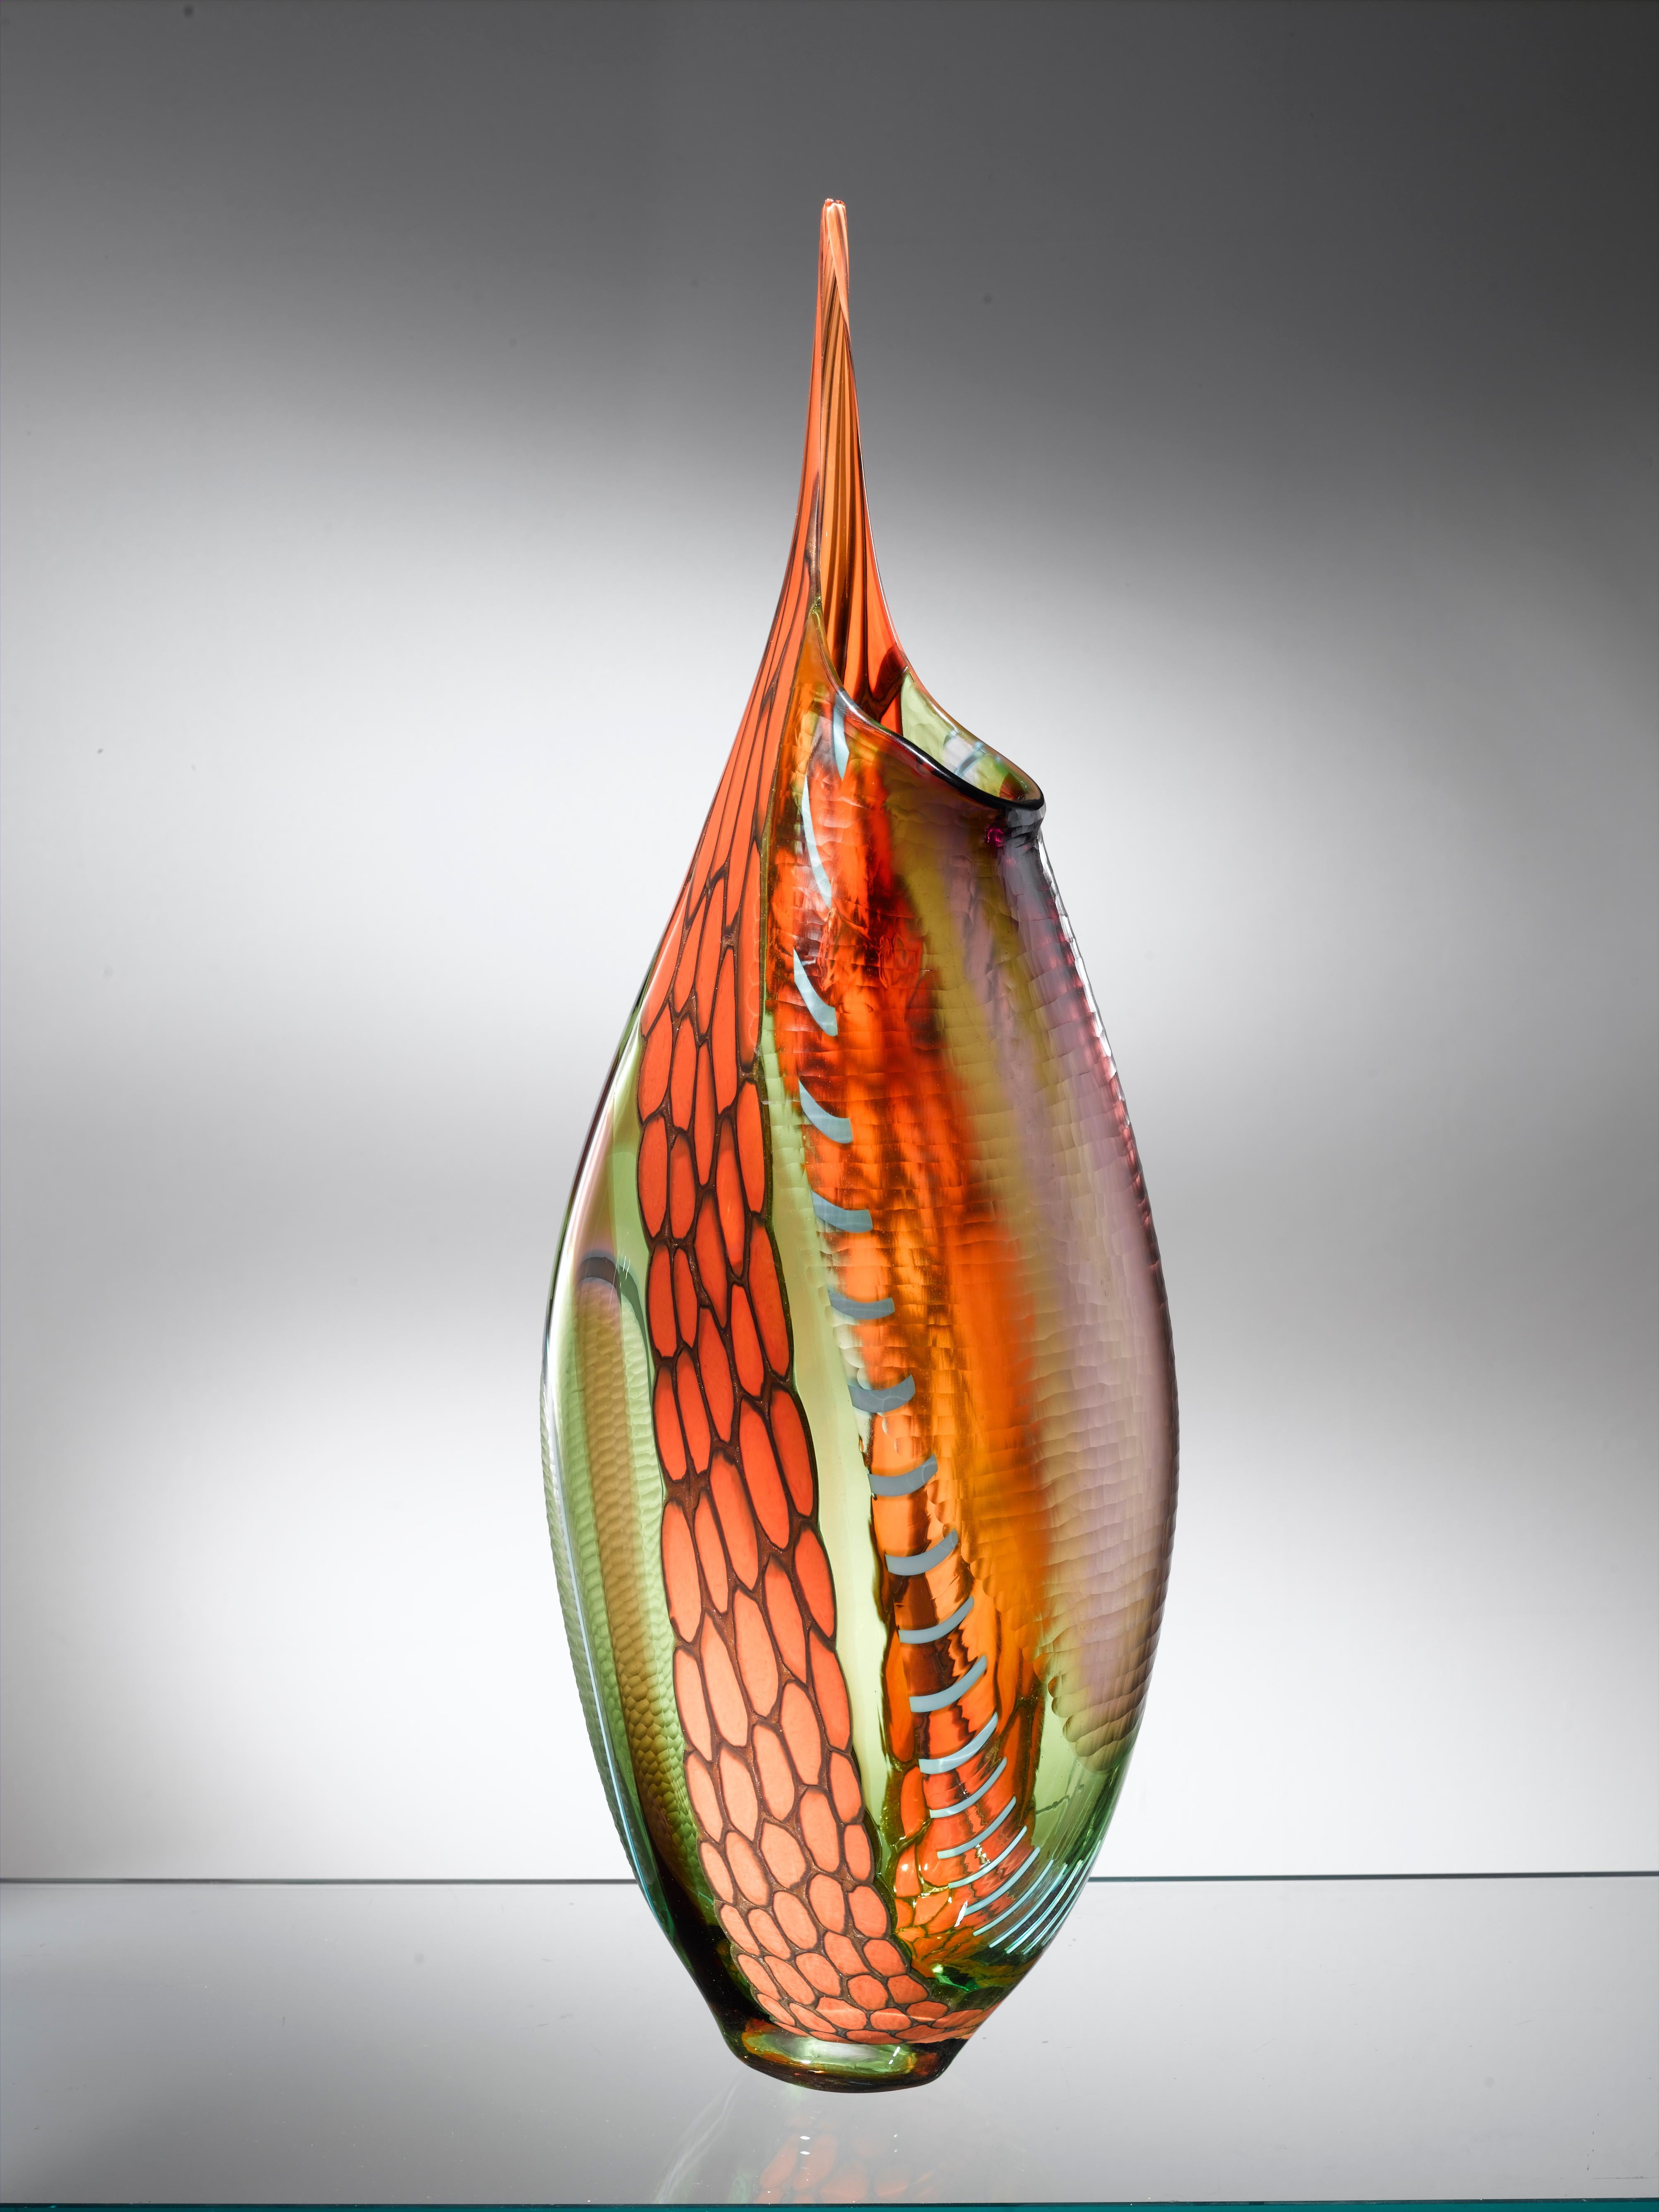 Murano künstlerisches Glas. Die künstlerische Glasskulptur aus Murano ist ein kreativer und natürlicher Ausdruck des Künstlers Eros Raffael, hergestellt aus mundgeblasenem Murano-Glas von Eros Raffael, in dieser Skulptur sind sie in perfekte